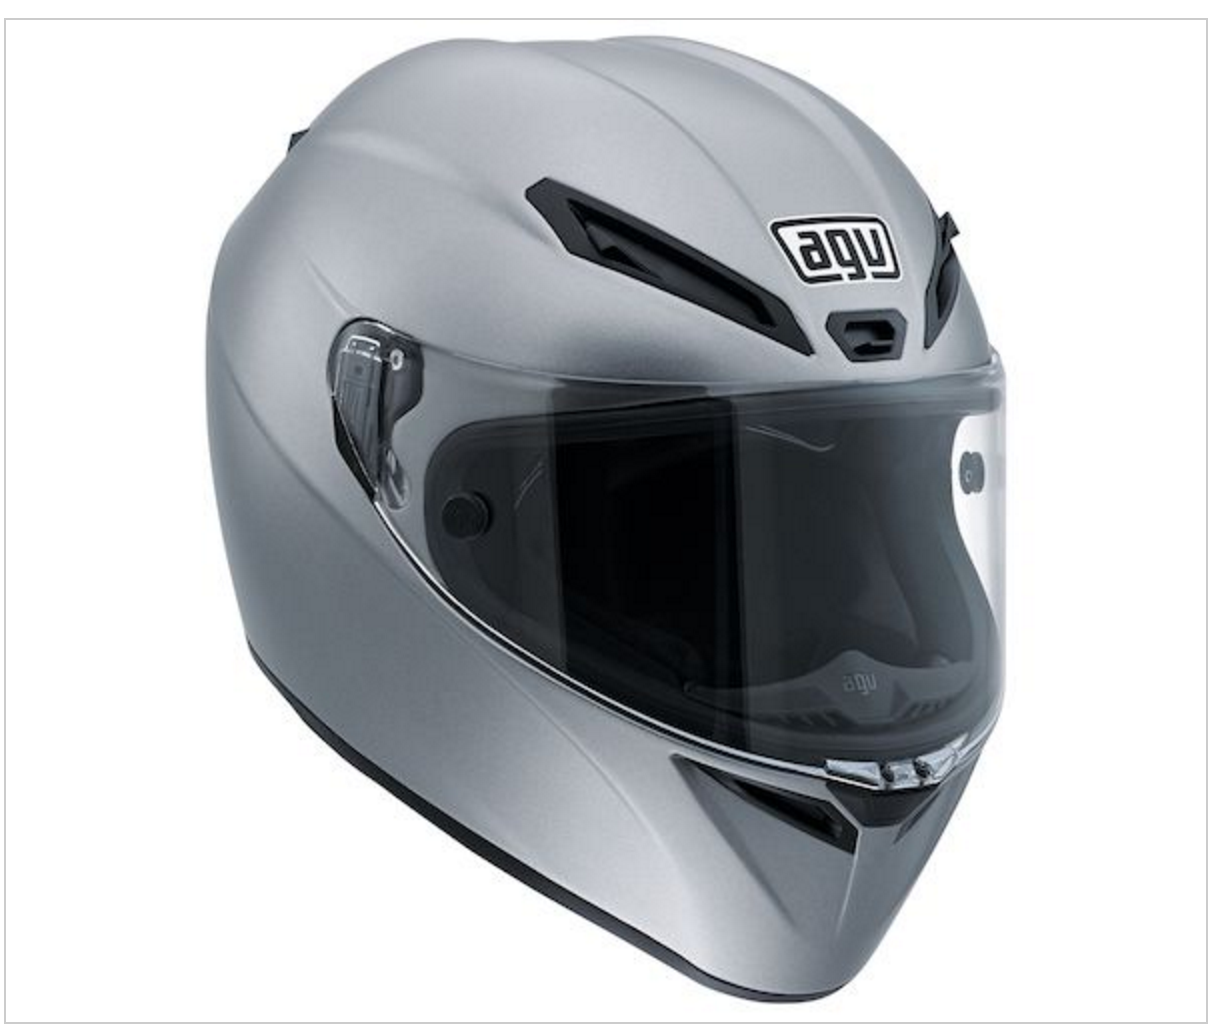 Like Corsa AGV GT Veloce Izoard Full Face Dot Carbon glass Motorcycle Helmet